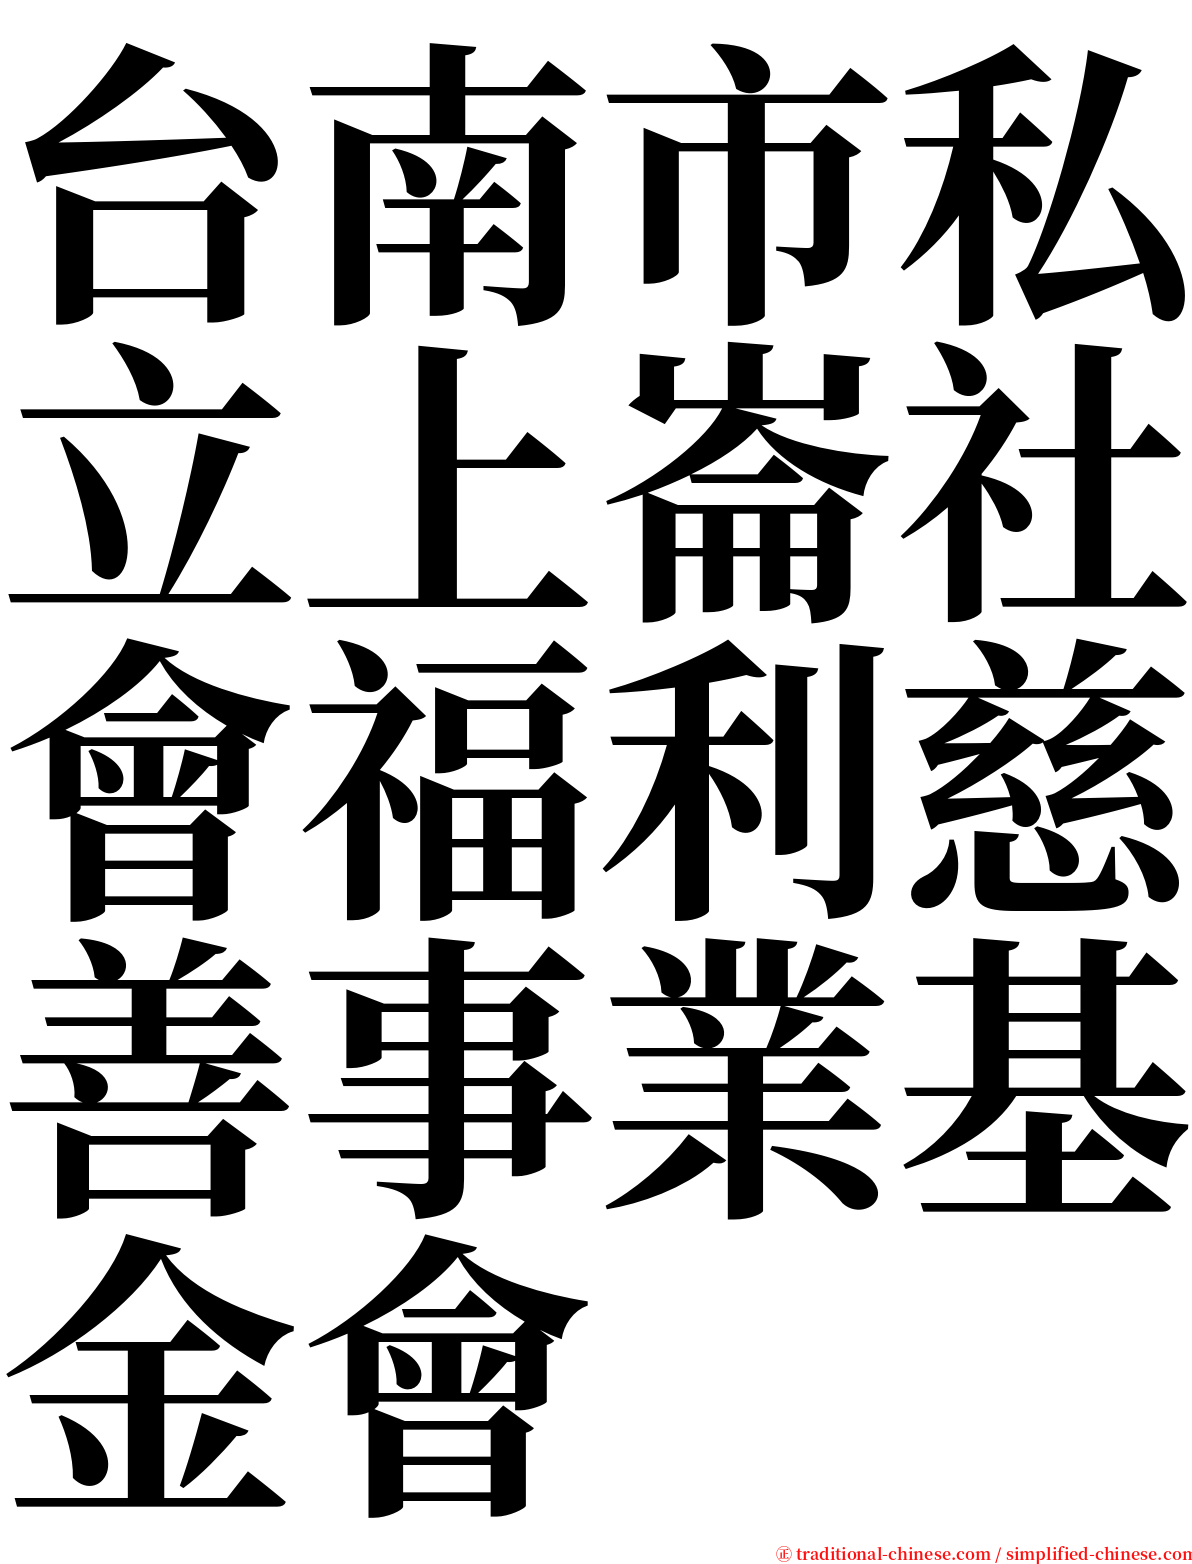 台南市私立上崙社會福利慈善事業基金會 serif font